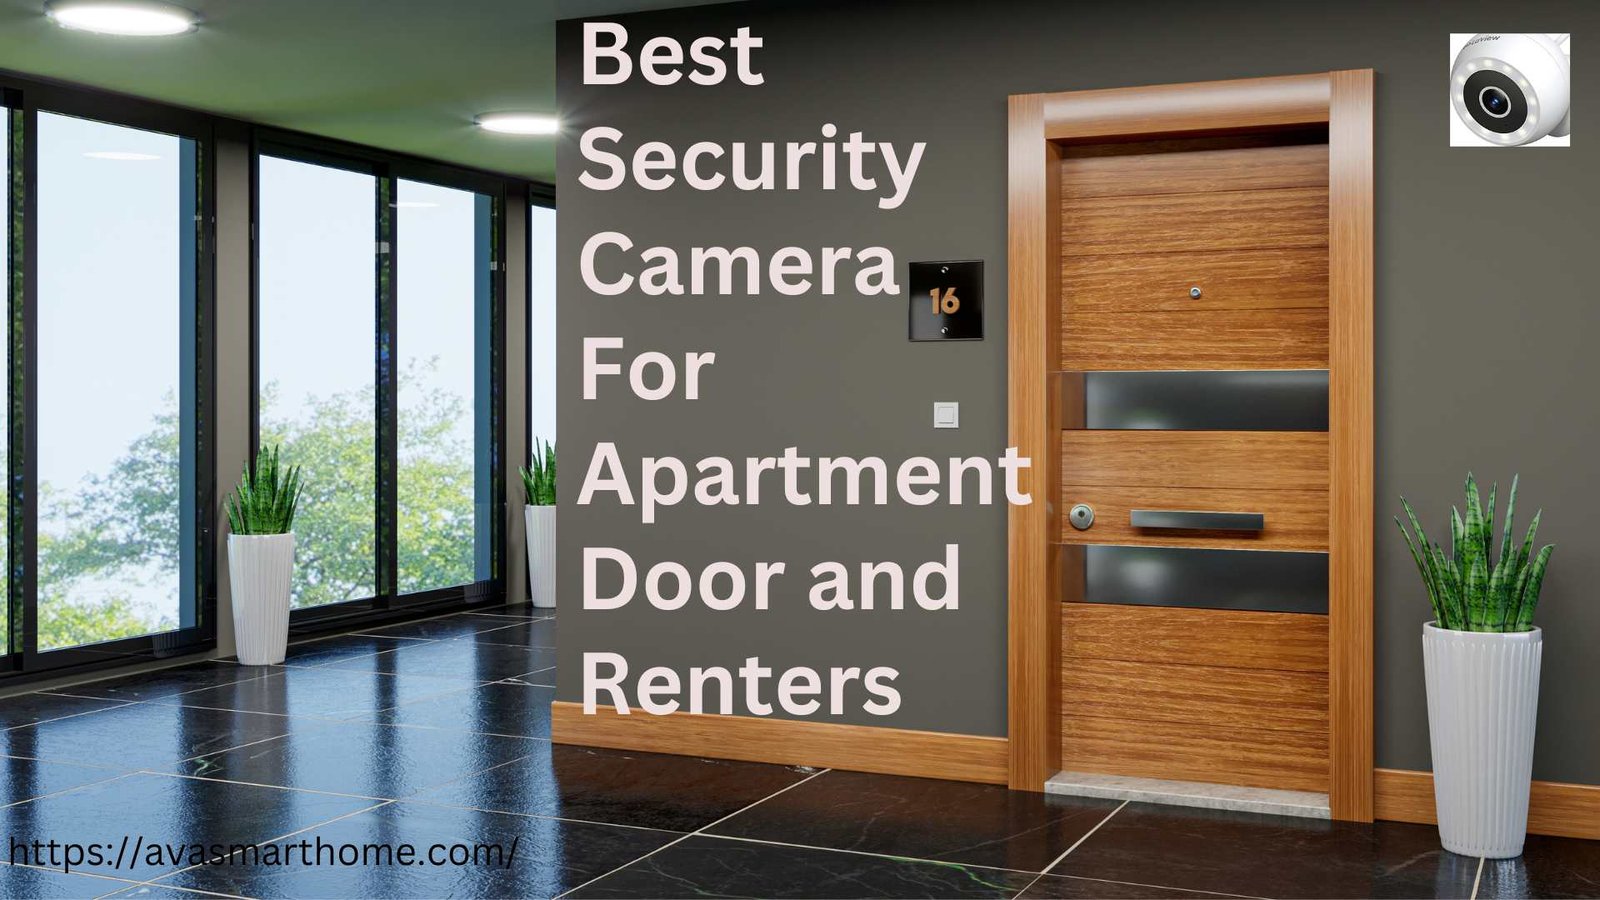 Best Security Camera For Apartment Door